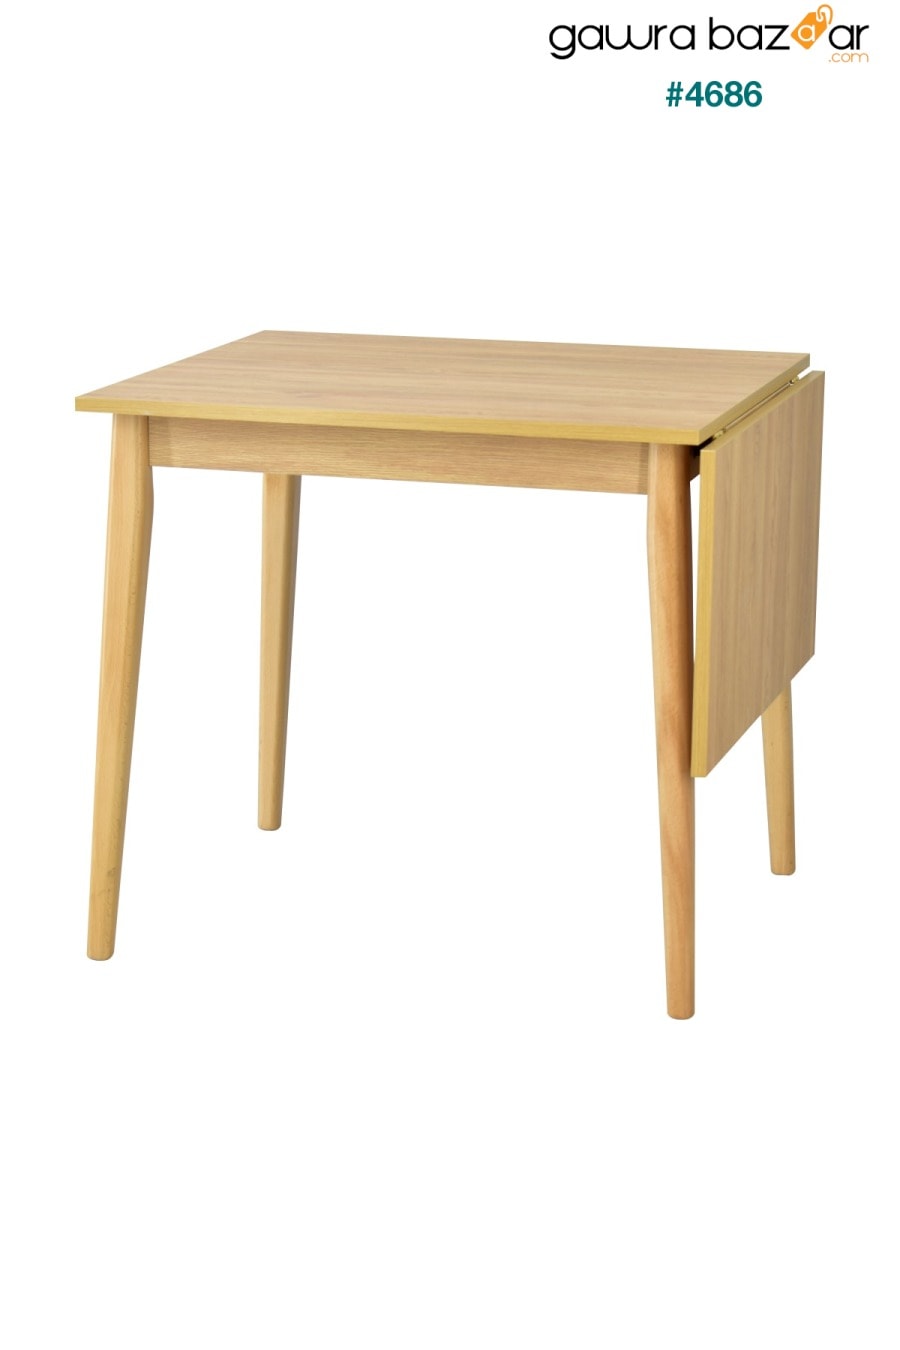 طاولة مطبخ خشبية قابلة للطي من افانوس - 70x80 سم VİLİNZE 2